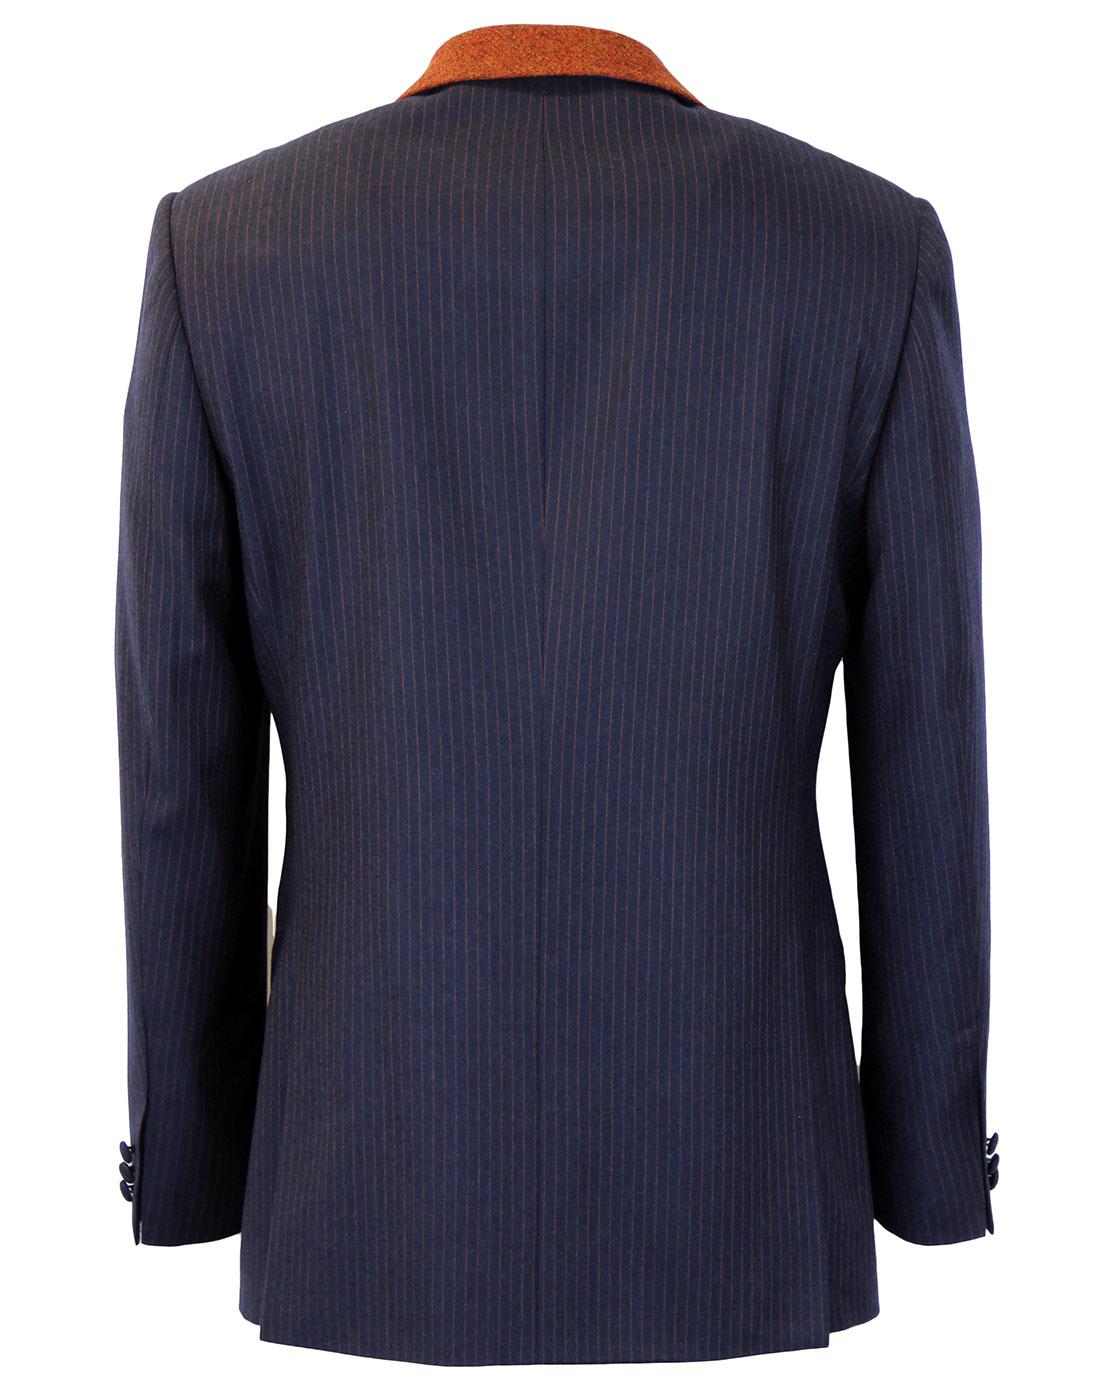 MADCAP ENGLAND Mod Flannel Stripe 4 Button Suit